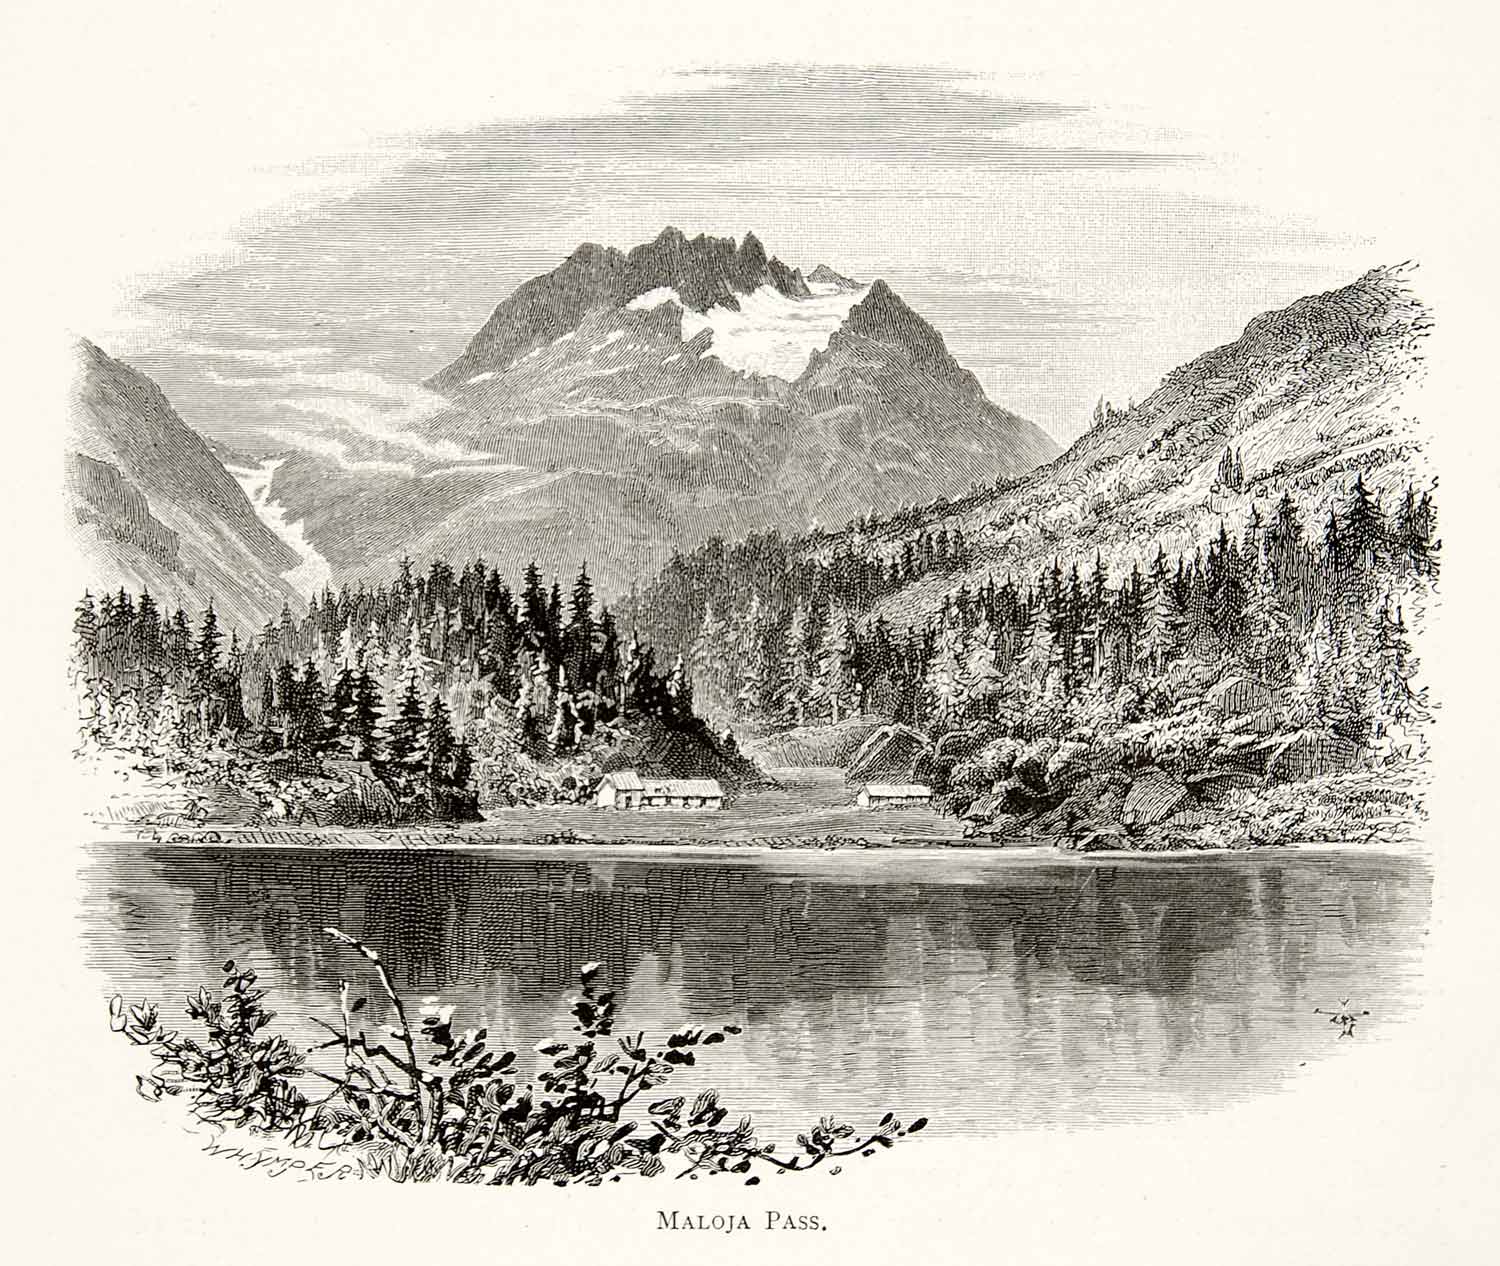 1891 Wood Engraving Whymper Switzerland Maloja Pass Alps Mountains Lake XGSB1